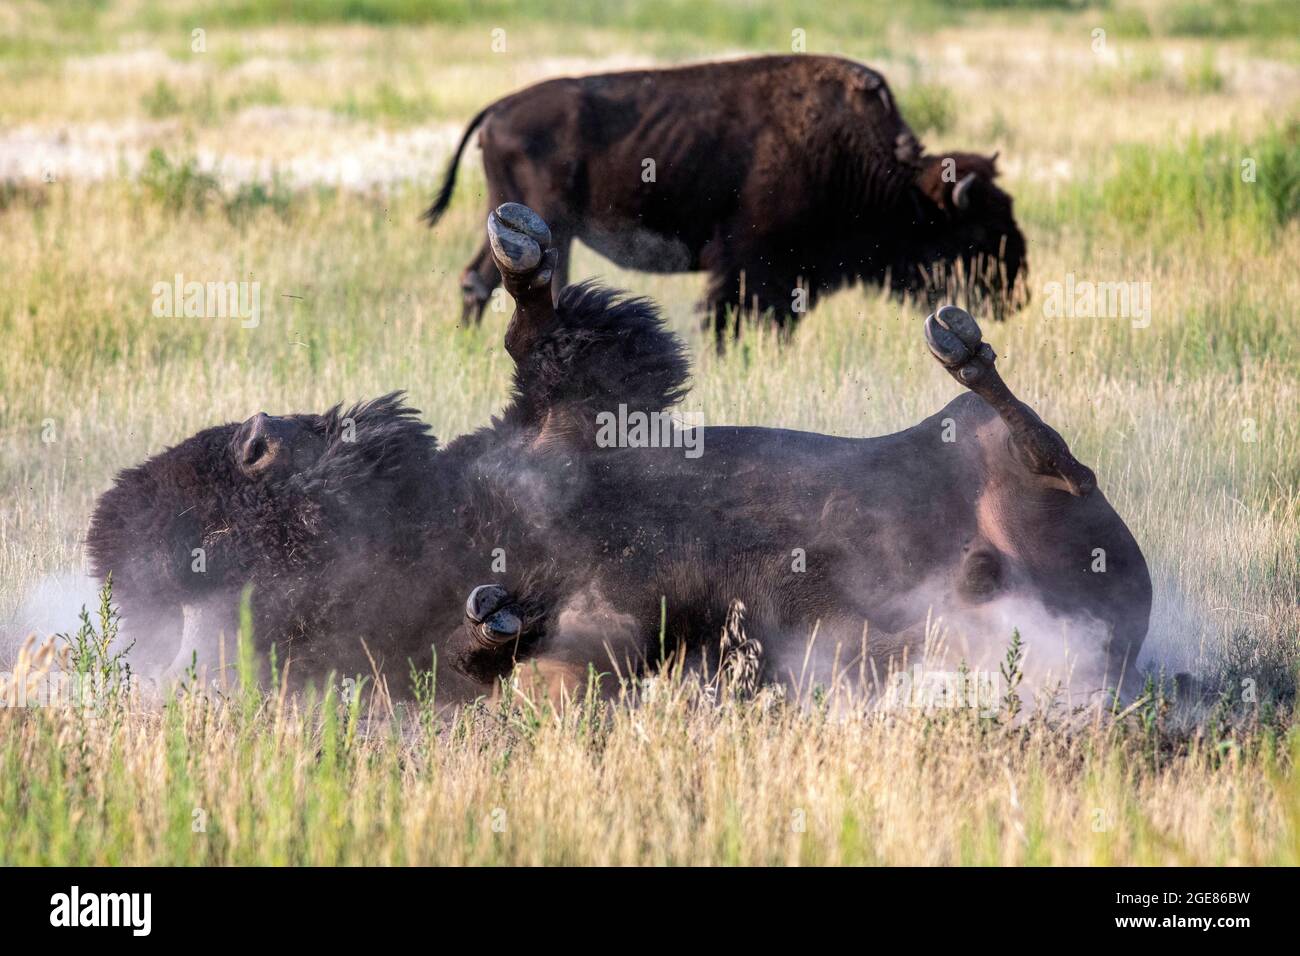 American Bison (Bison bison) roulant dans la terre (waling) - Rocky Mountain Arsenal National Wildlife refuge, Commerce City, près de Denver, Colorado [Imag Banque D'Images